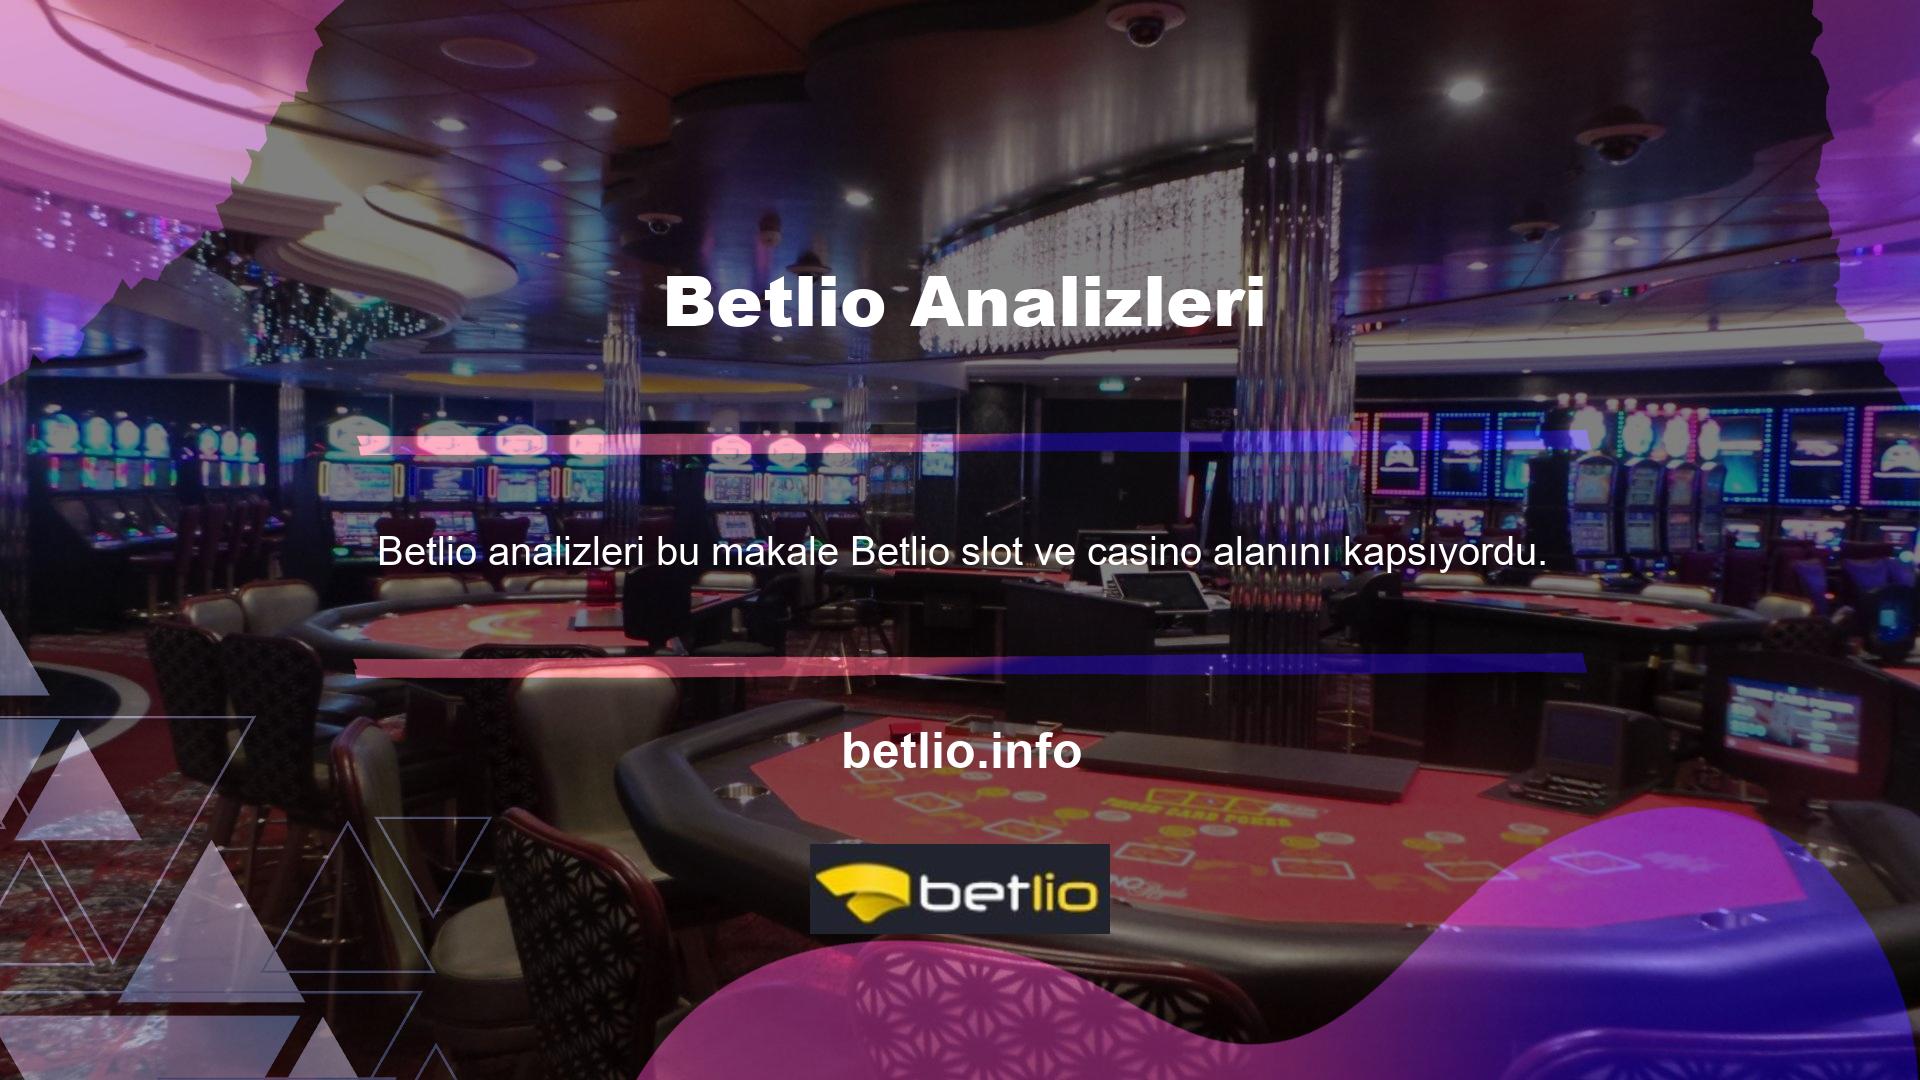 Bu bilgiyi dikkate alarak Betlio slot makineleri ve casino mekanlarıyla ilgilenme konusundaki olağanüstü yöntemini inceledik